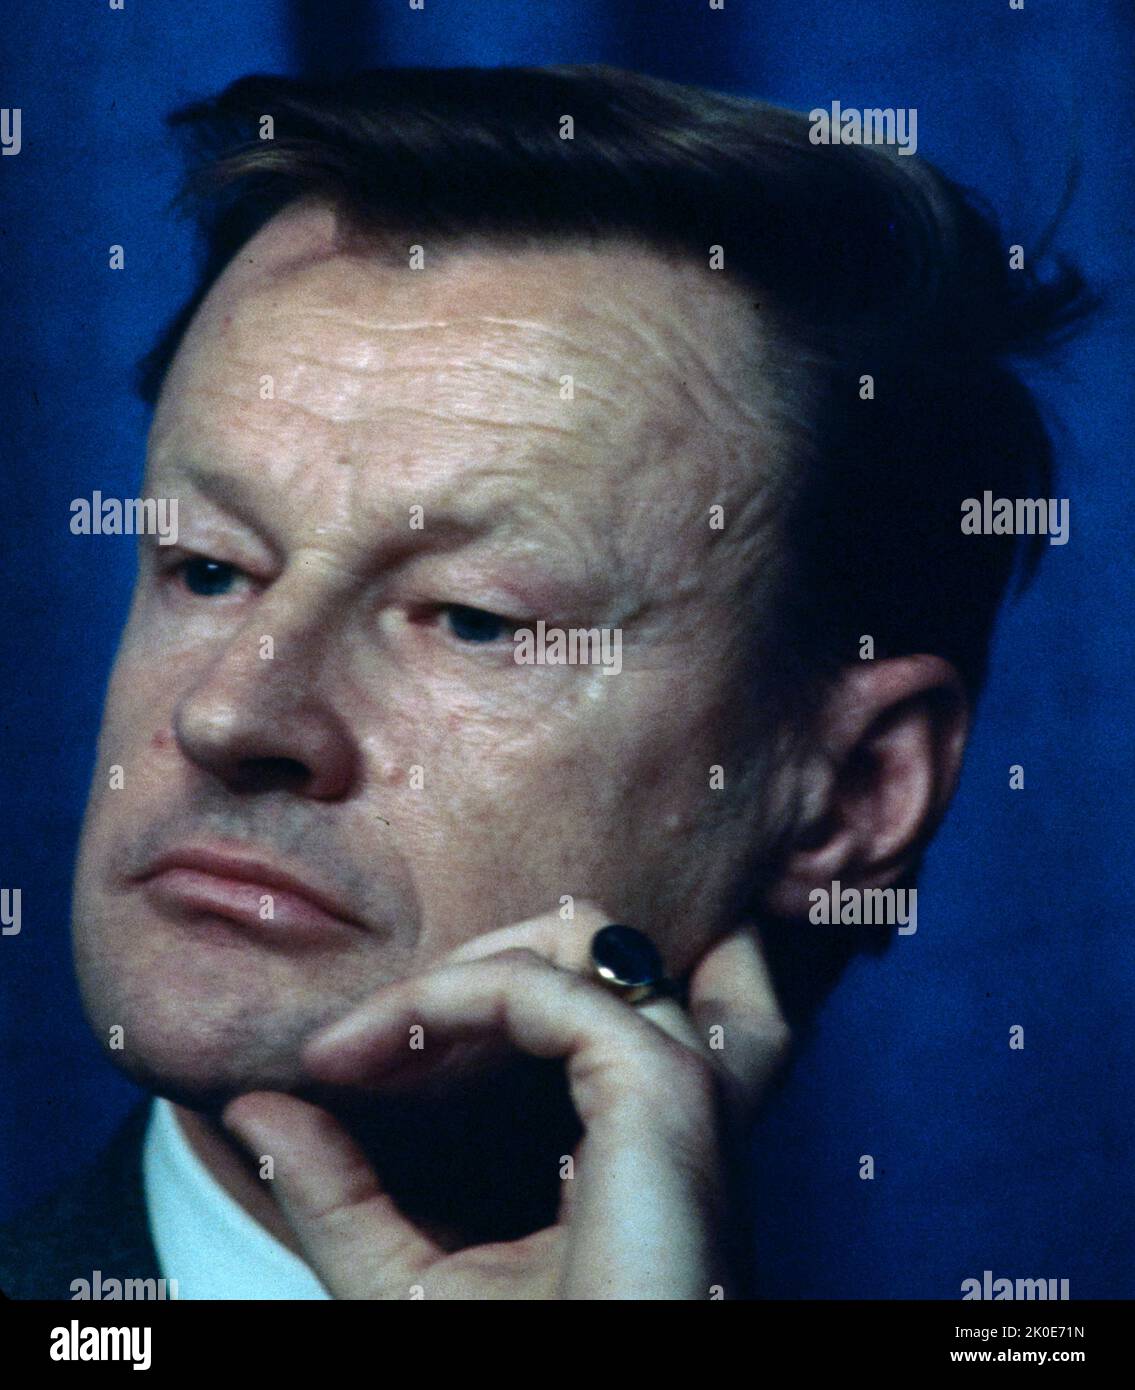 Zbigniew Kazimierz Brzezinski (1928 - 2017) polnisch-amerikanischer Diplomat und Politikwissenschaftler. Von 1966 bis 1968 war er Berater von Präsident Lyndon B. Johnson und von 1977 bis 1981 nationaler Sicherheitsberater von Präsident Jimmy Carter. Stockfoto